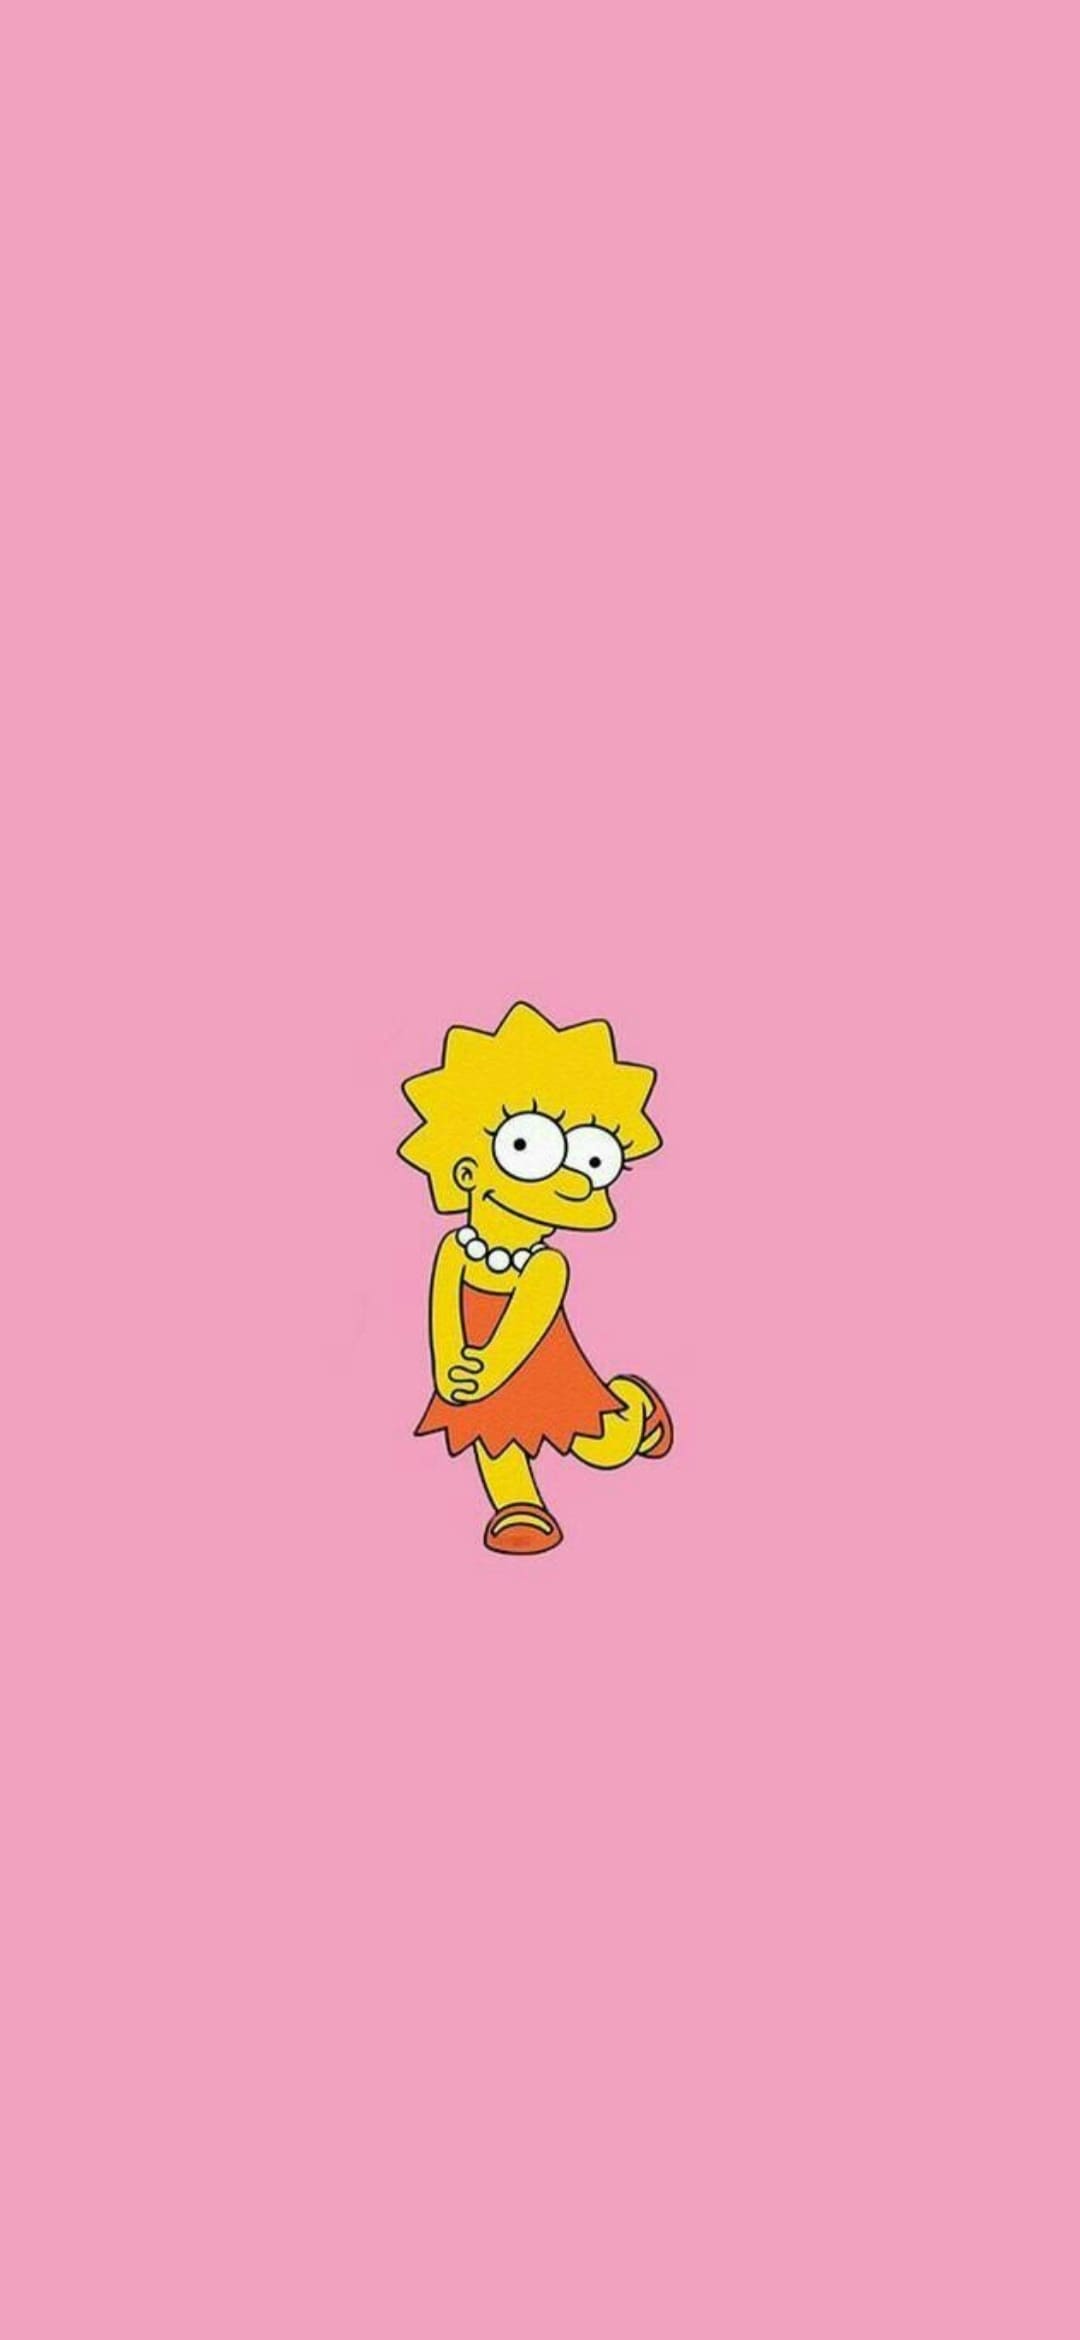 Simpsons 2020 Wallpaper